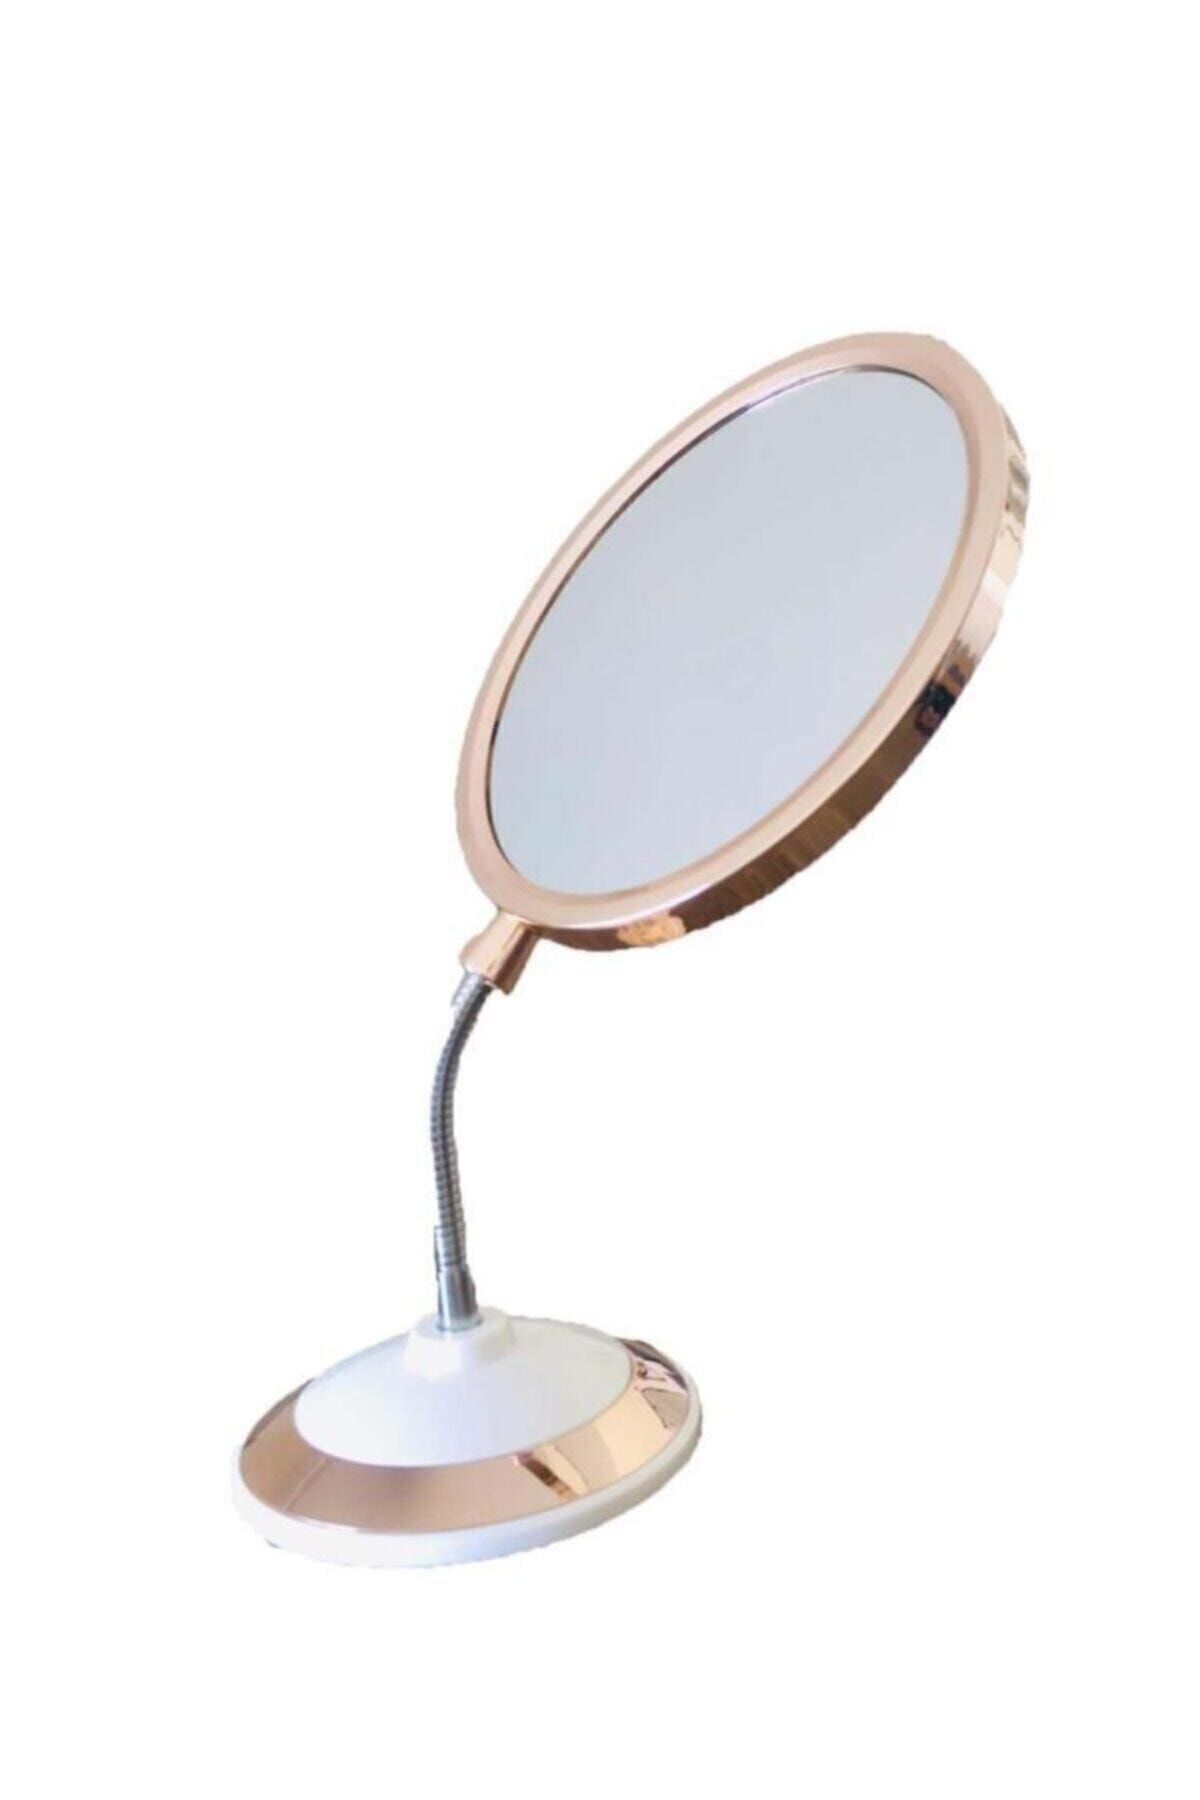 firsatgeldi Çift Taraflı Büyüteçli 360 Derece Eğilebilir Oval Makyaj Aynası